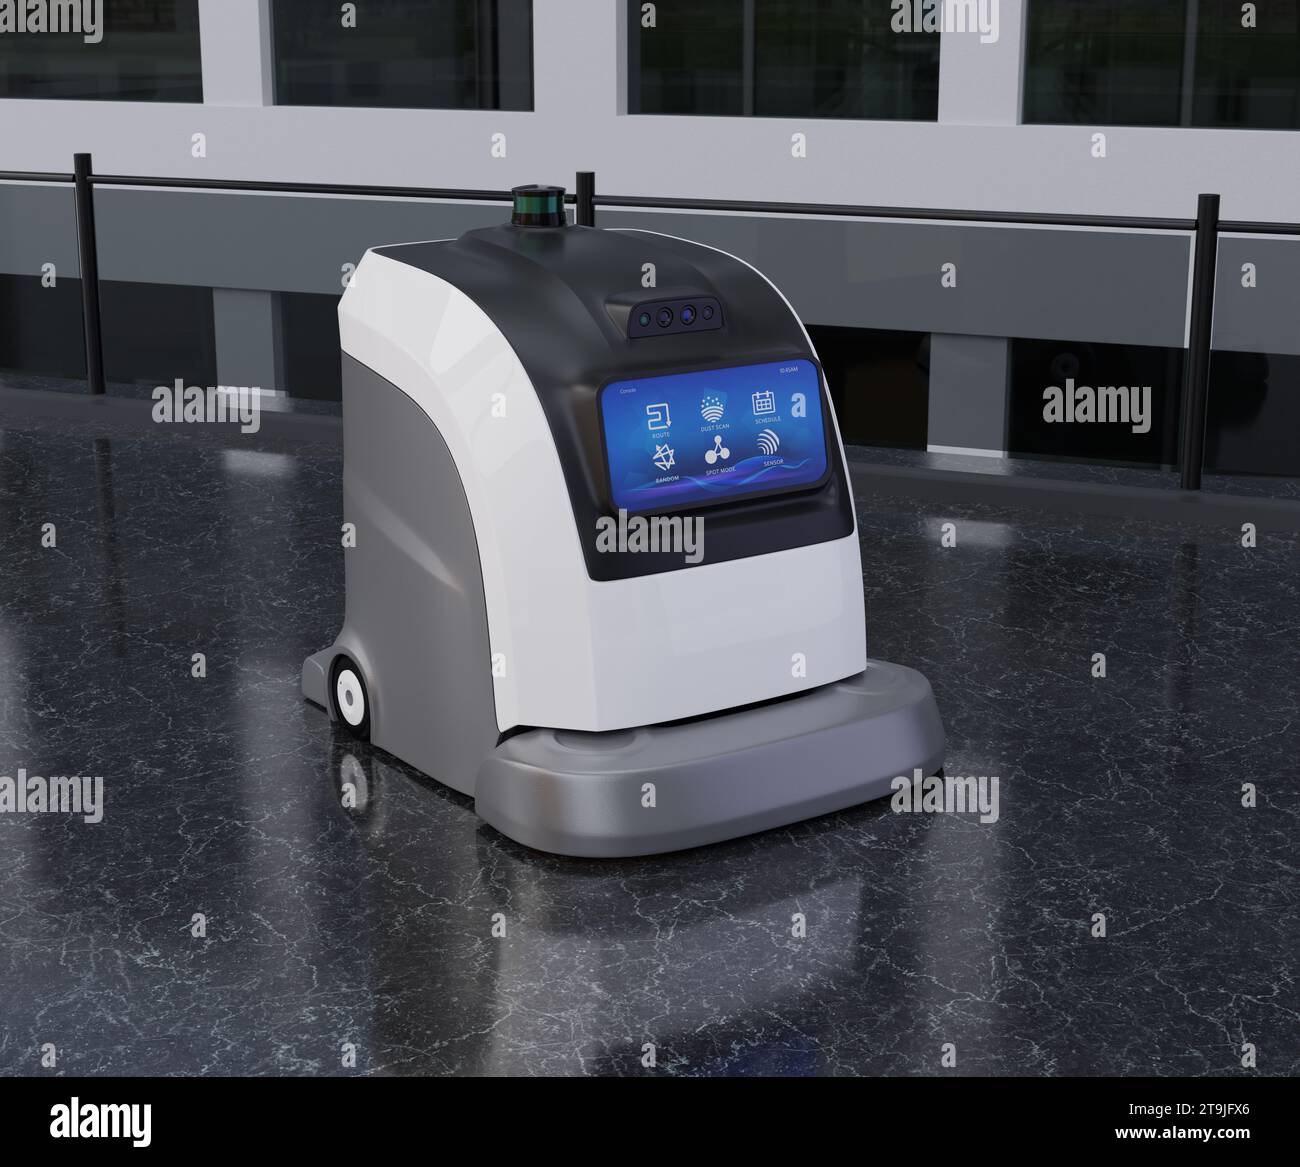 Robots nettoyeurs autonomes nettoyage du sol dans le centre commercial. Conception générique. Image de rendu 3D. Banque D'Images